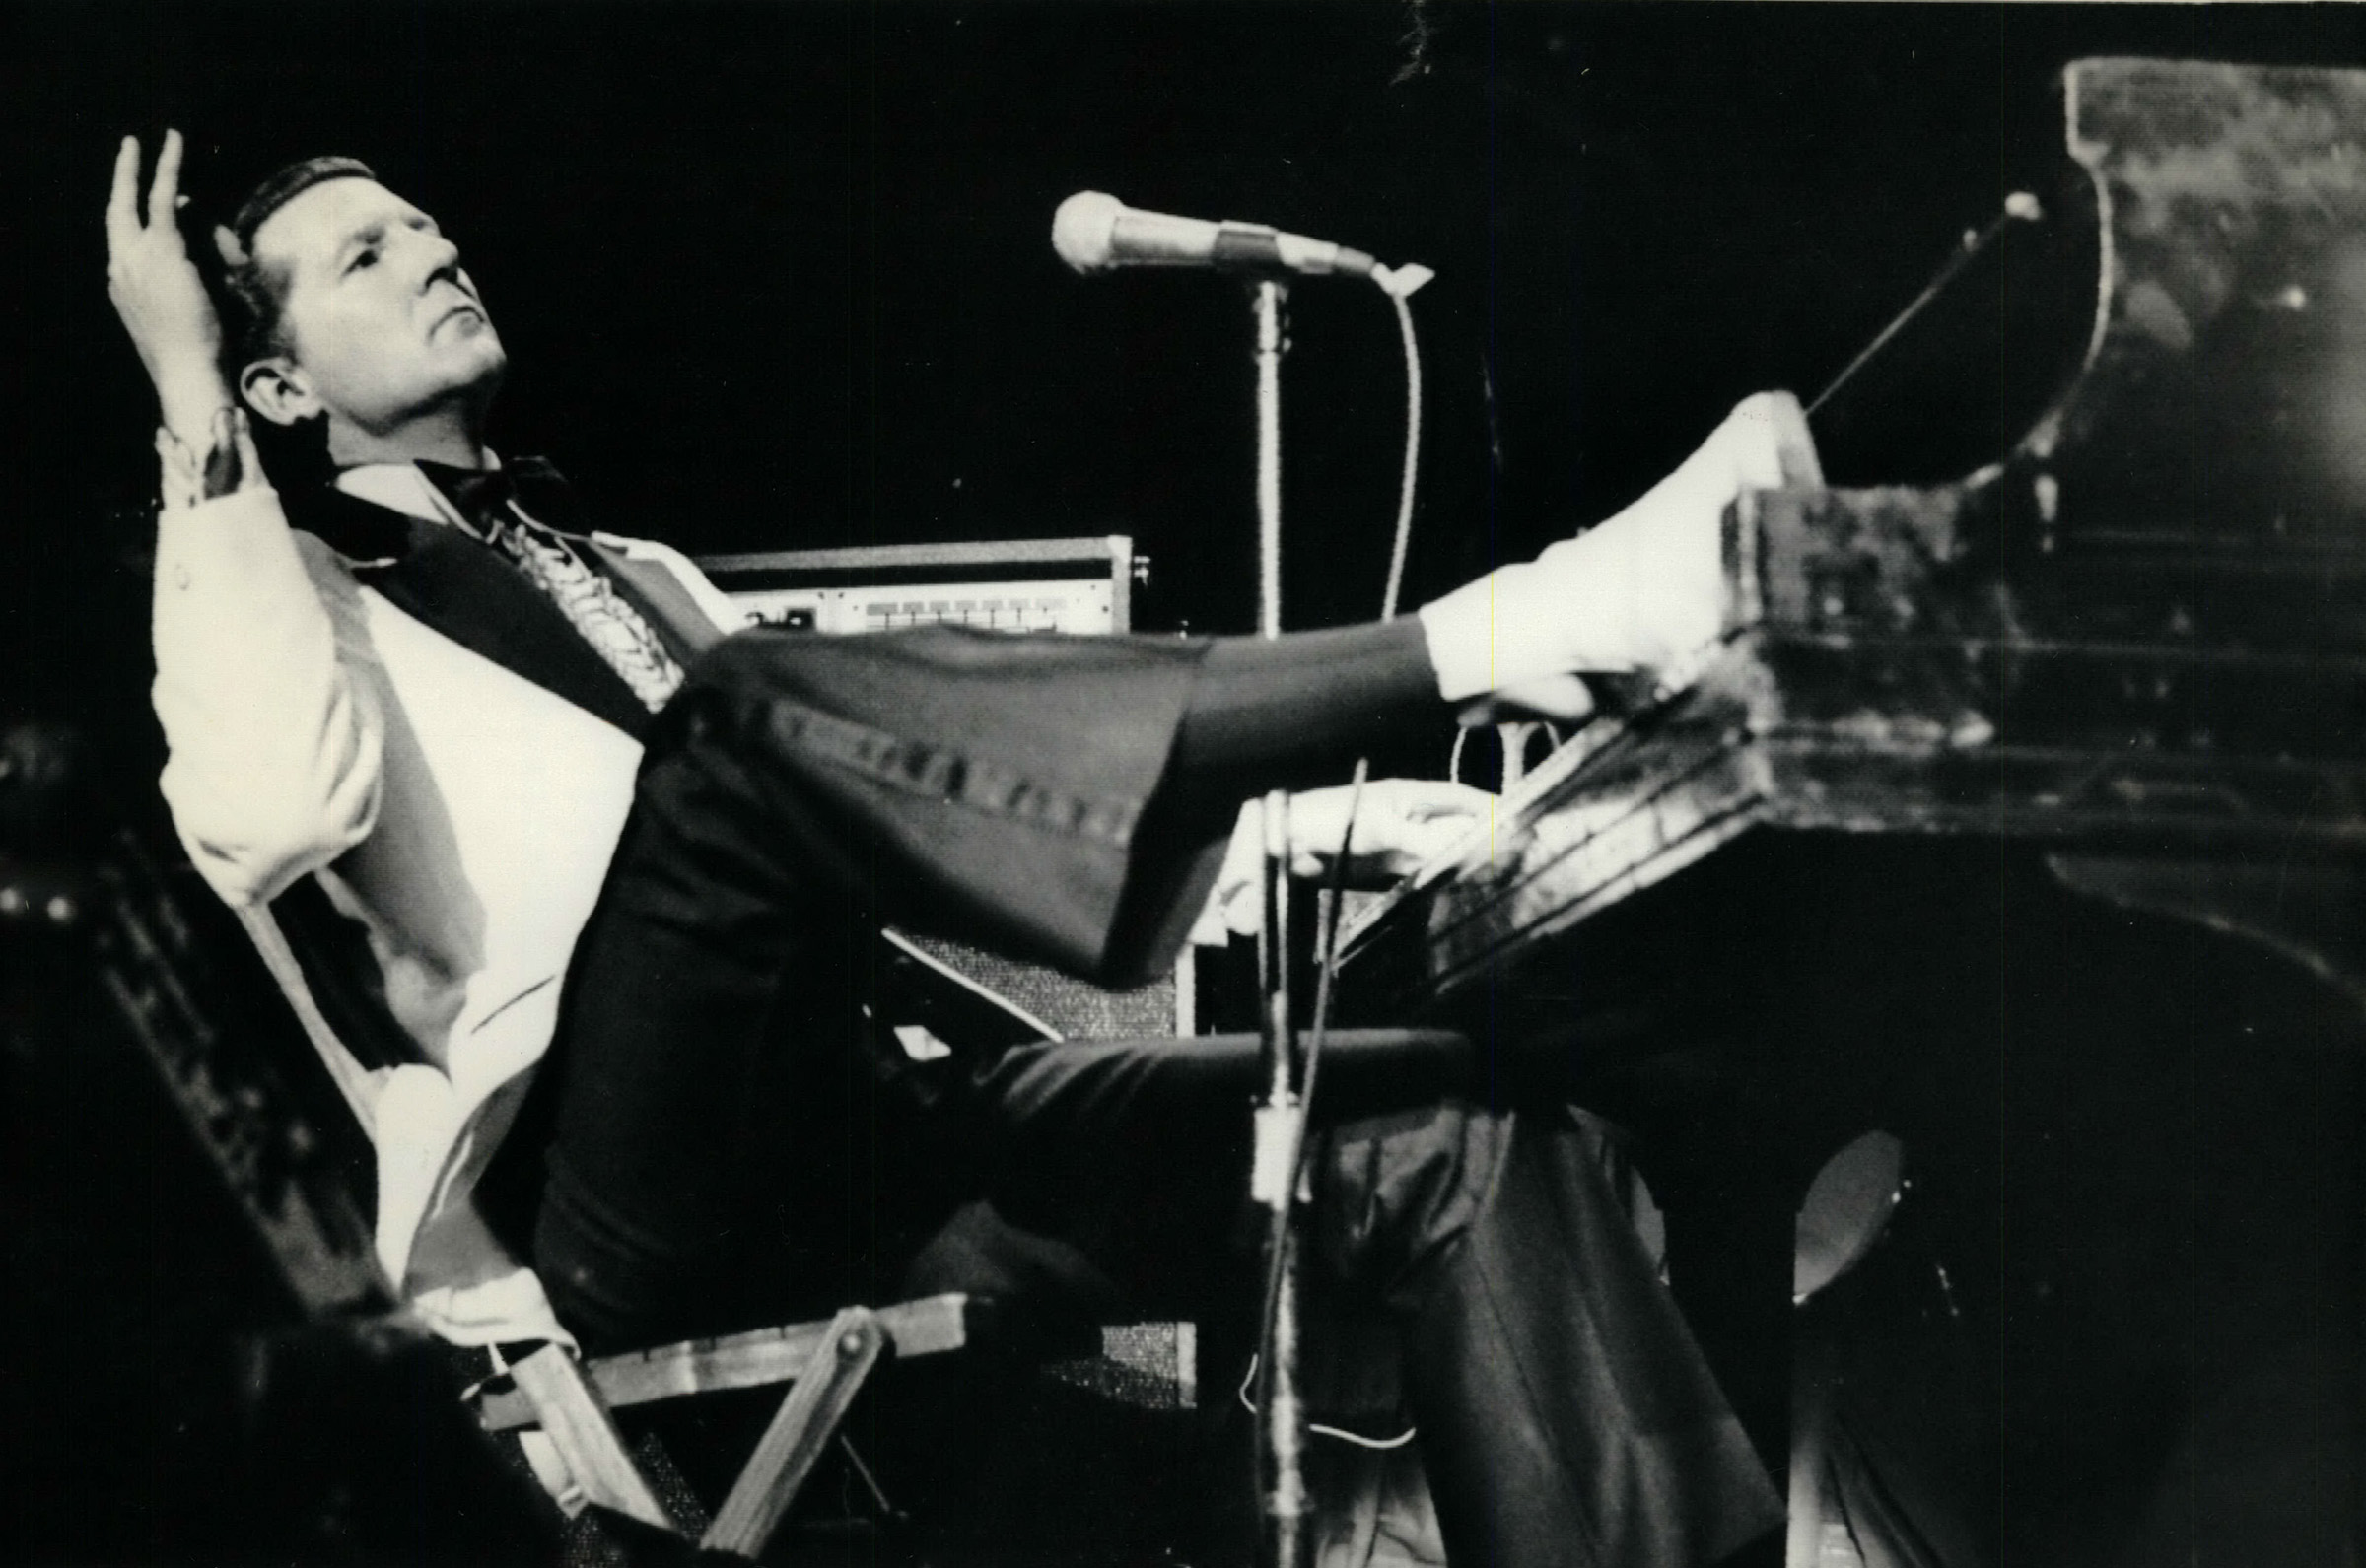 Jerry Lee Lewis, rock 'n' roll pioneer, singer of 'Great Balls of Fire',  dies at 87 